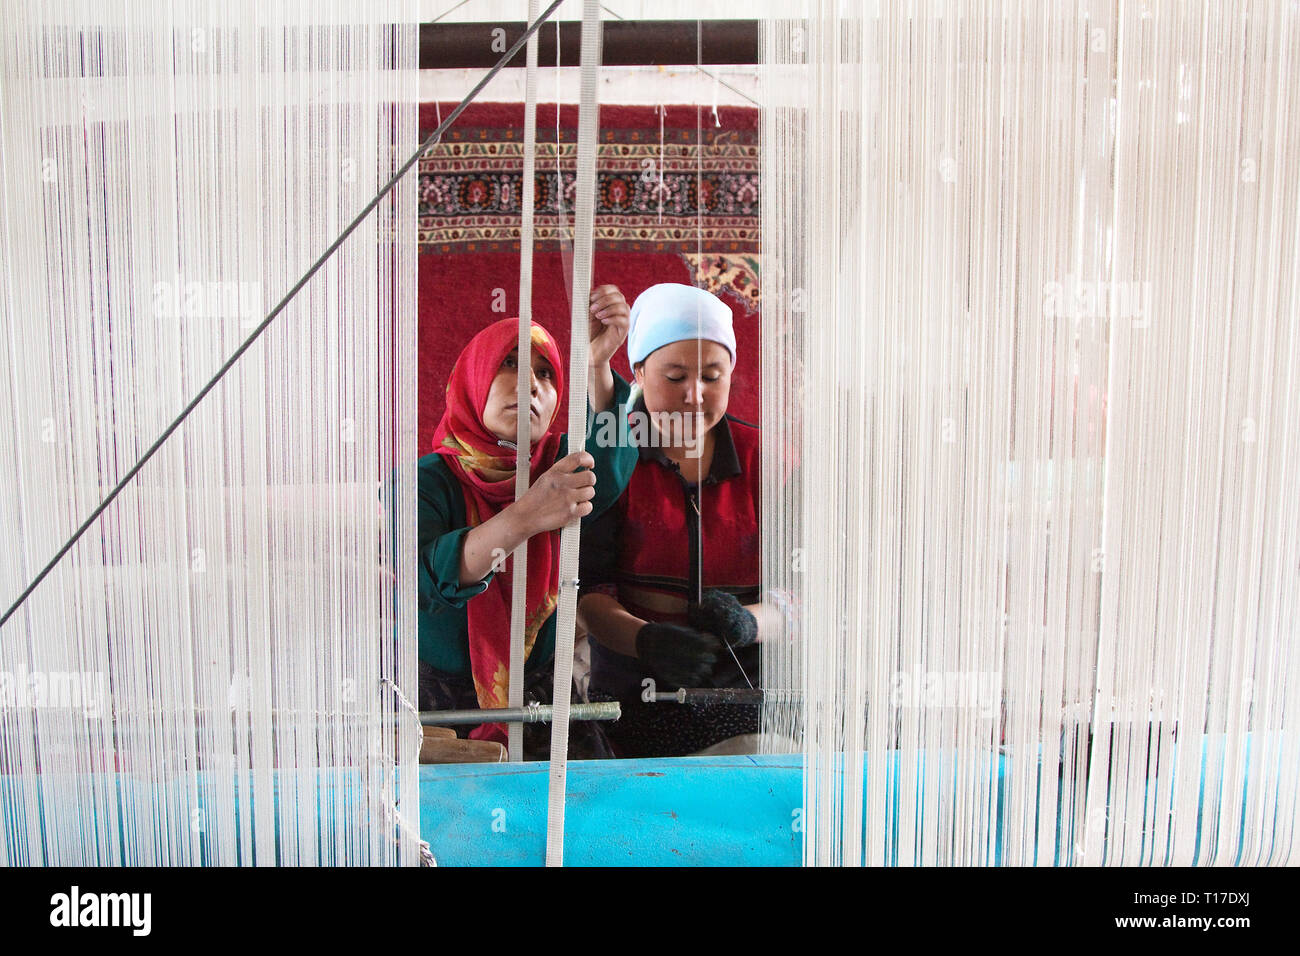 Le donne lavorano in una fabbrica di tappeti. I tappeti e la seta di Hotan sono stati famosi per migliaia di anni, Hotan, regione autonoma di Xinjiang, Cina. Foto Stock